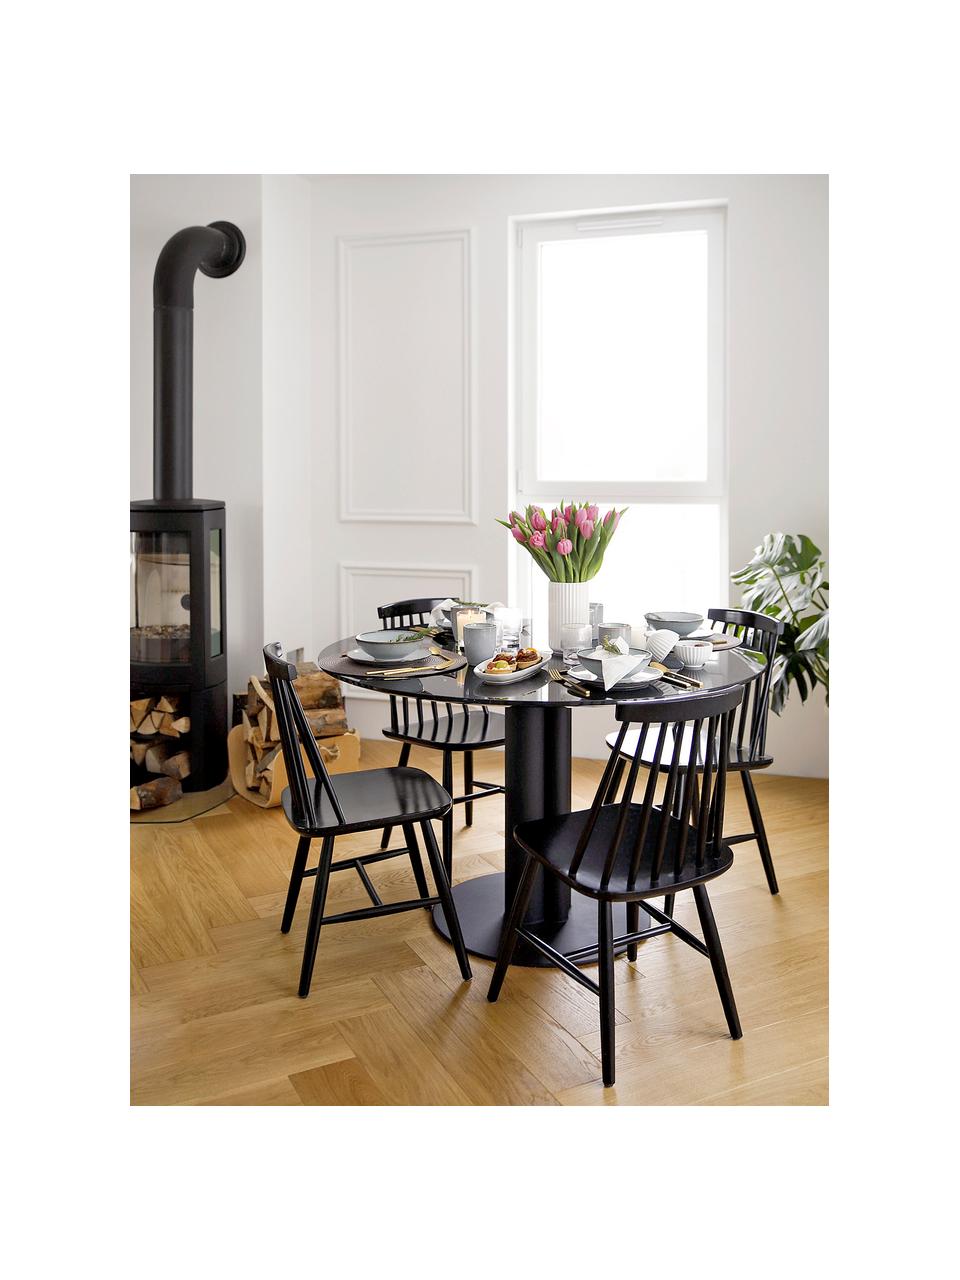 Drevená stolička vo Windsor štýle Milas, 2 ks, Lakované kaučukovníkové drevo, Čierna, Š 52, H 45 cm